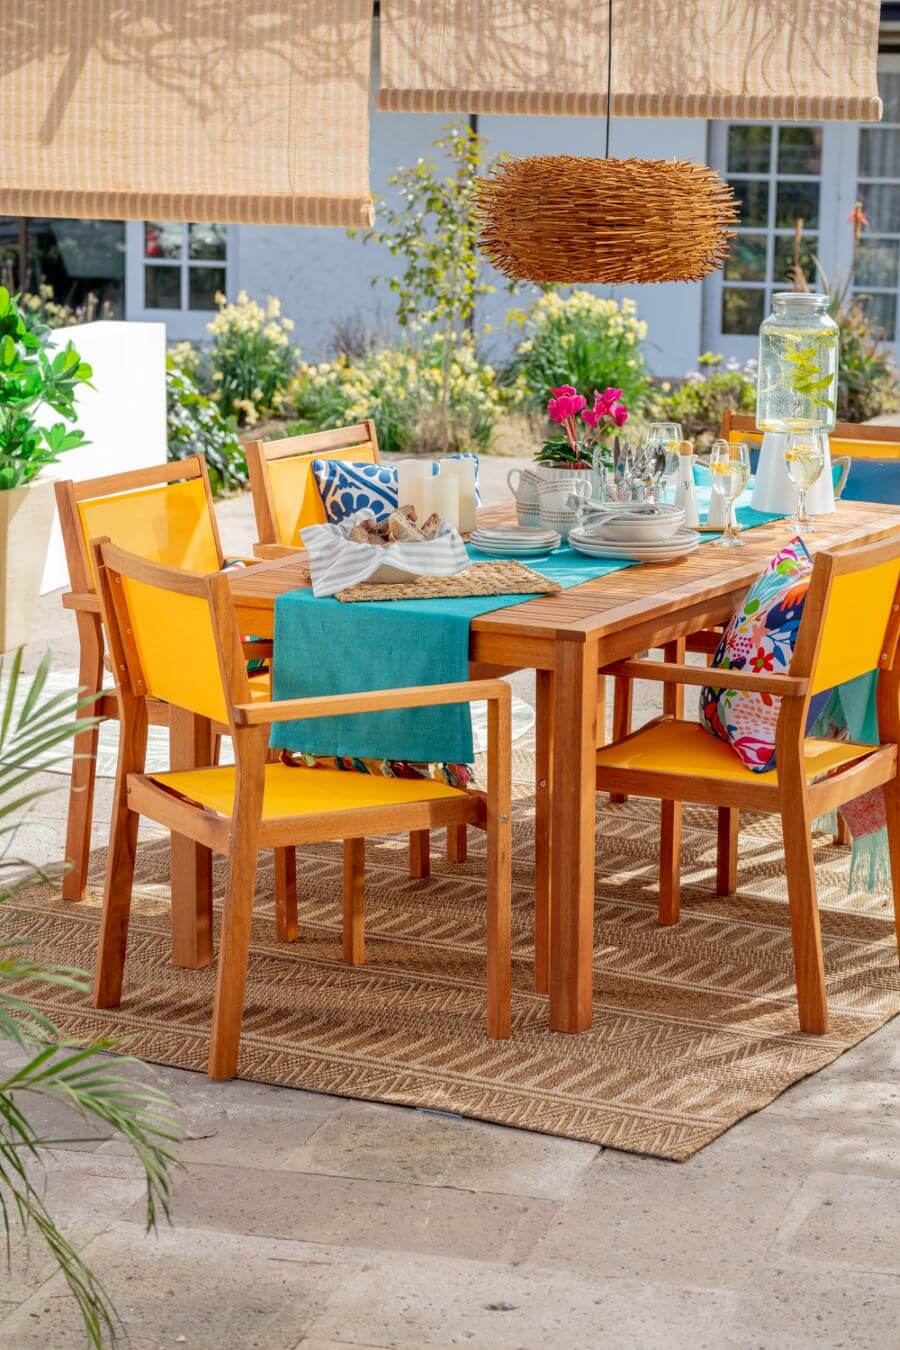 Terraza con mesa de comedor de madera, con 6 sillas ccon base y respaldo de tela color amarillo. Pesa puesta con vajilla blanca sobre un camino de mesa turquesa. Sobre la mesa hay una lámpara de techo redonda, de mimbre. Alfombra de sisal café